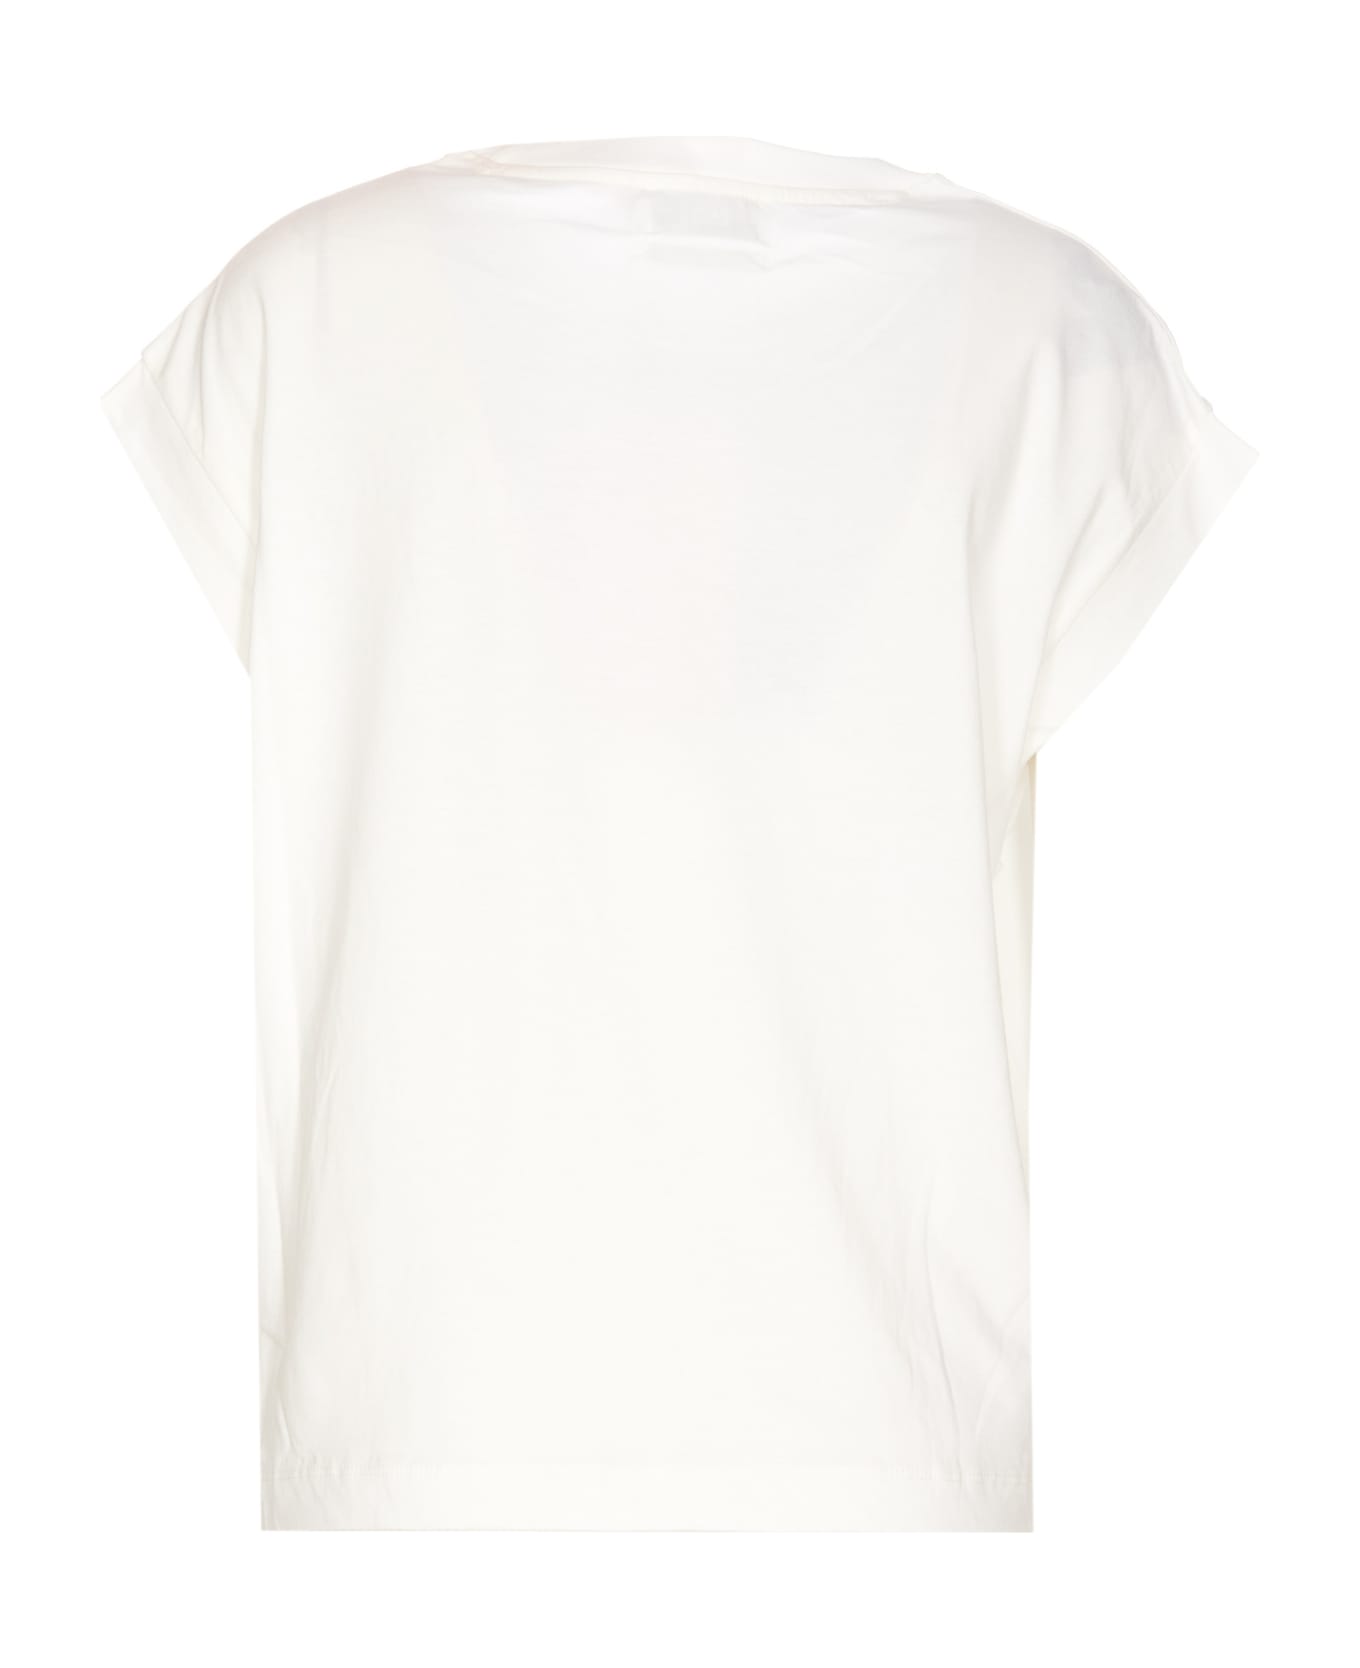 Essentiel Antwerp Faustina T-shirt - White Tシャツ